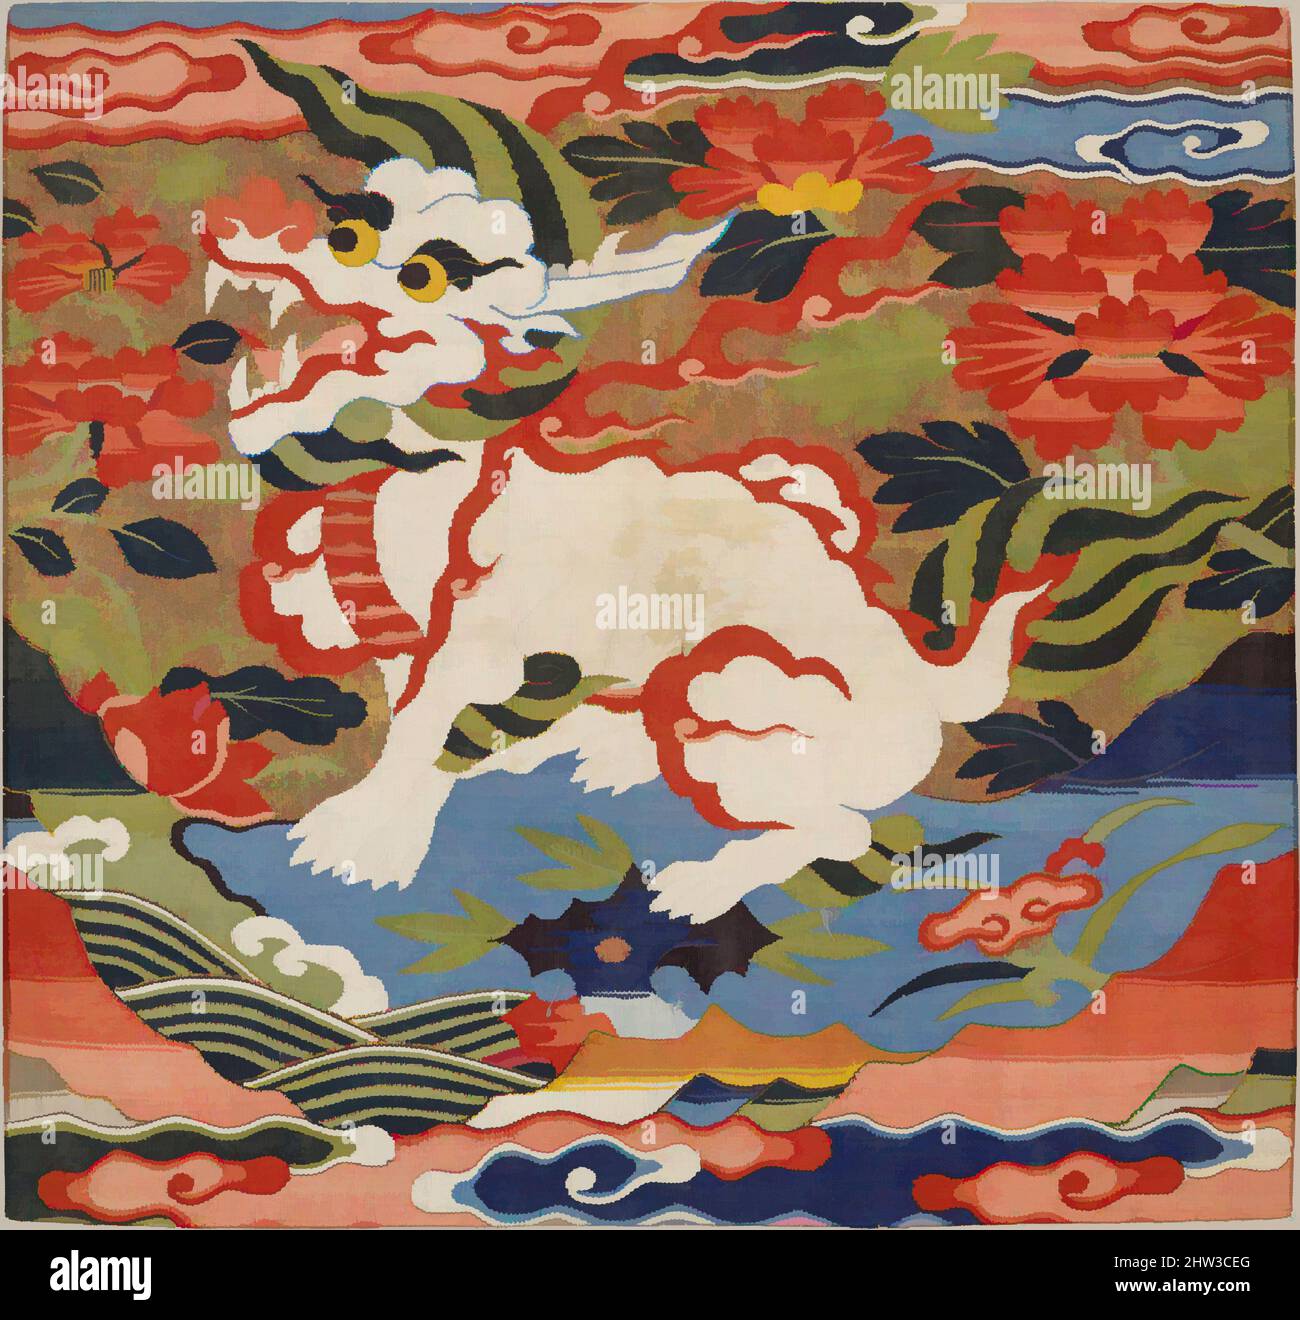 Art inspiré par le rang badge avec animal mythologique, dynastie Ming (1368–1644), fin 16th–début 17th siècle, Chine, tapisserie de soie (kesi), 13 3/4 x 14 1/2 po. (34,9 x 36,8 cm), textiles-tapisseries, oeuvres classiques modernisées par Artotop avec une touche de modernité. Formes, couleur et valeur, impact visuel accrocheur sur l'art émotions par la liberté d'œuvres d'art d'une manière contemporaine. Un message intemporel qui cherche une nouvelle direction créative. Artistes qui se tournent vers le support numérique et créent le NFT Artotop Banque D'Images